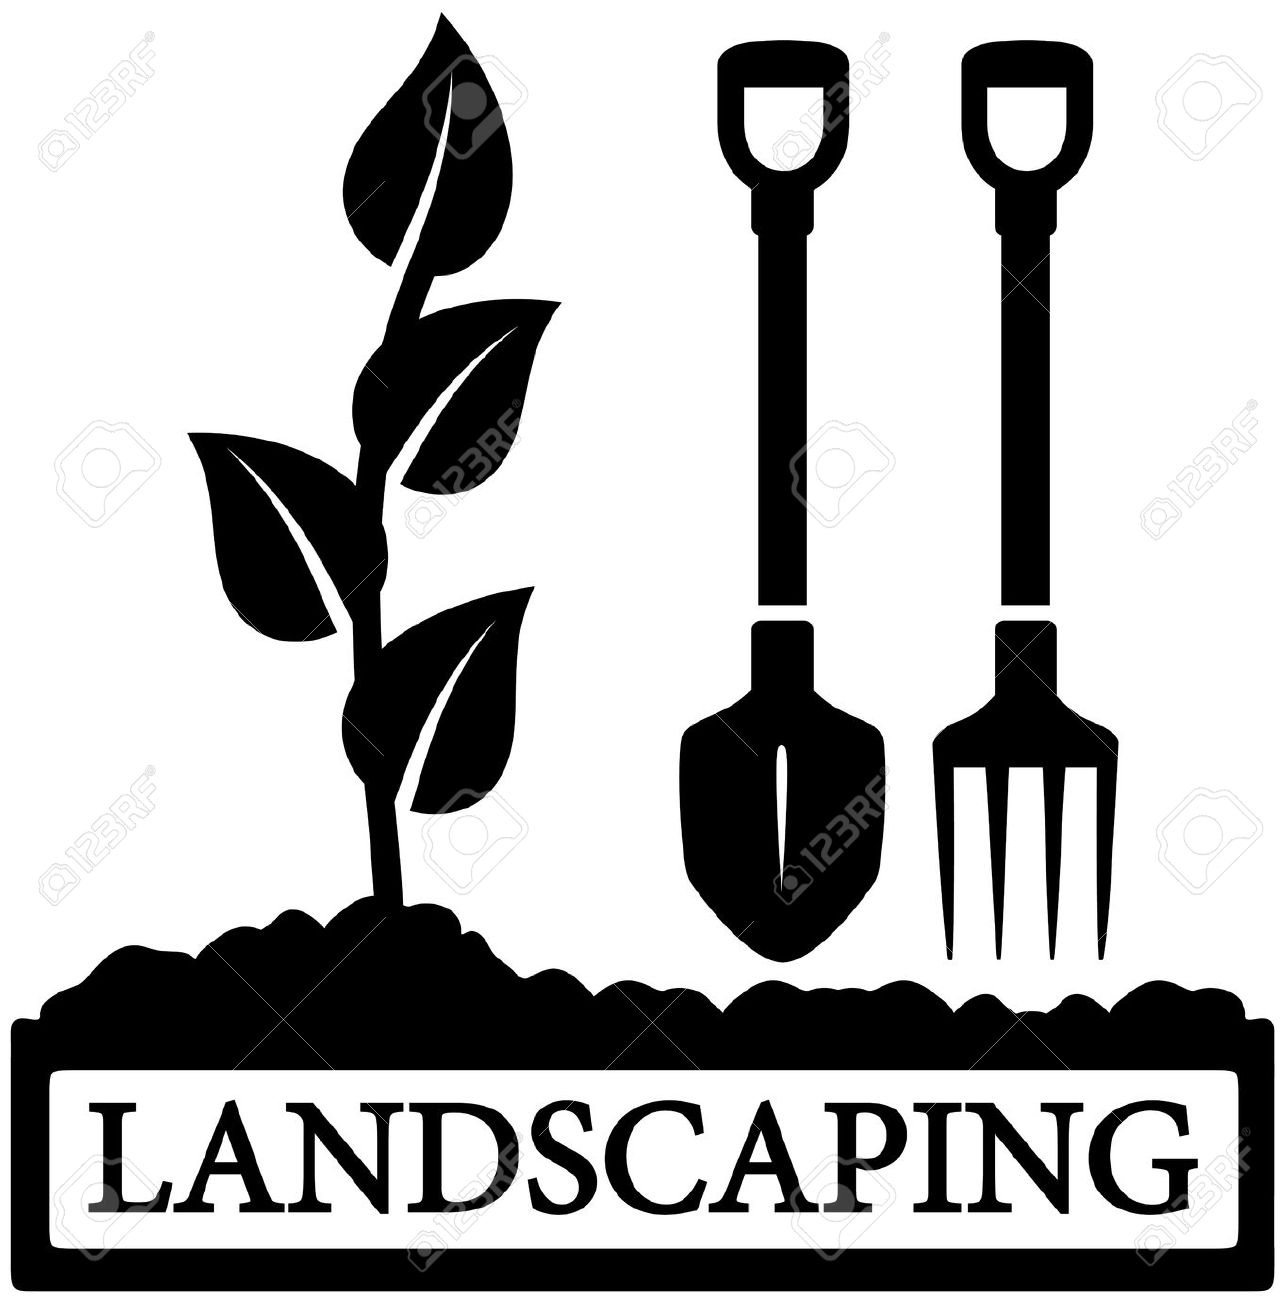 Landscaping Clipart Free. Lan